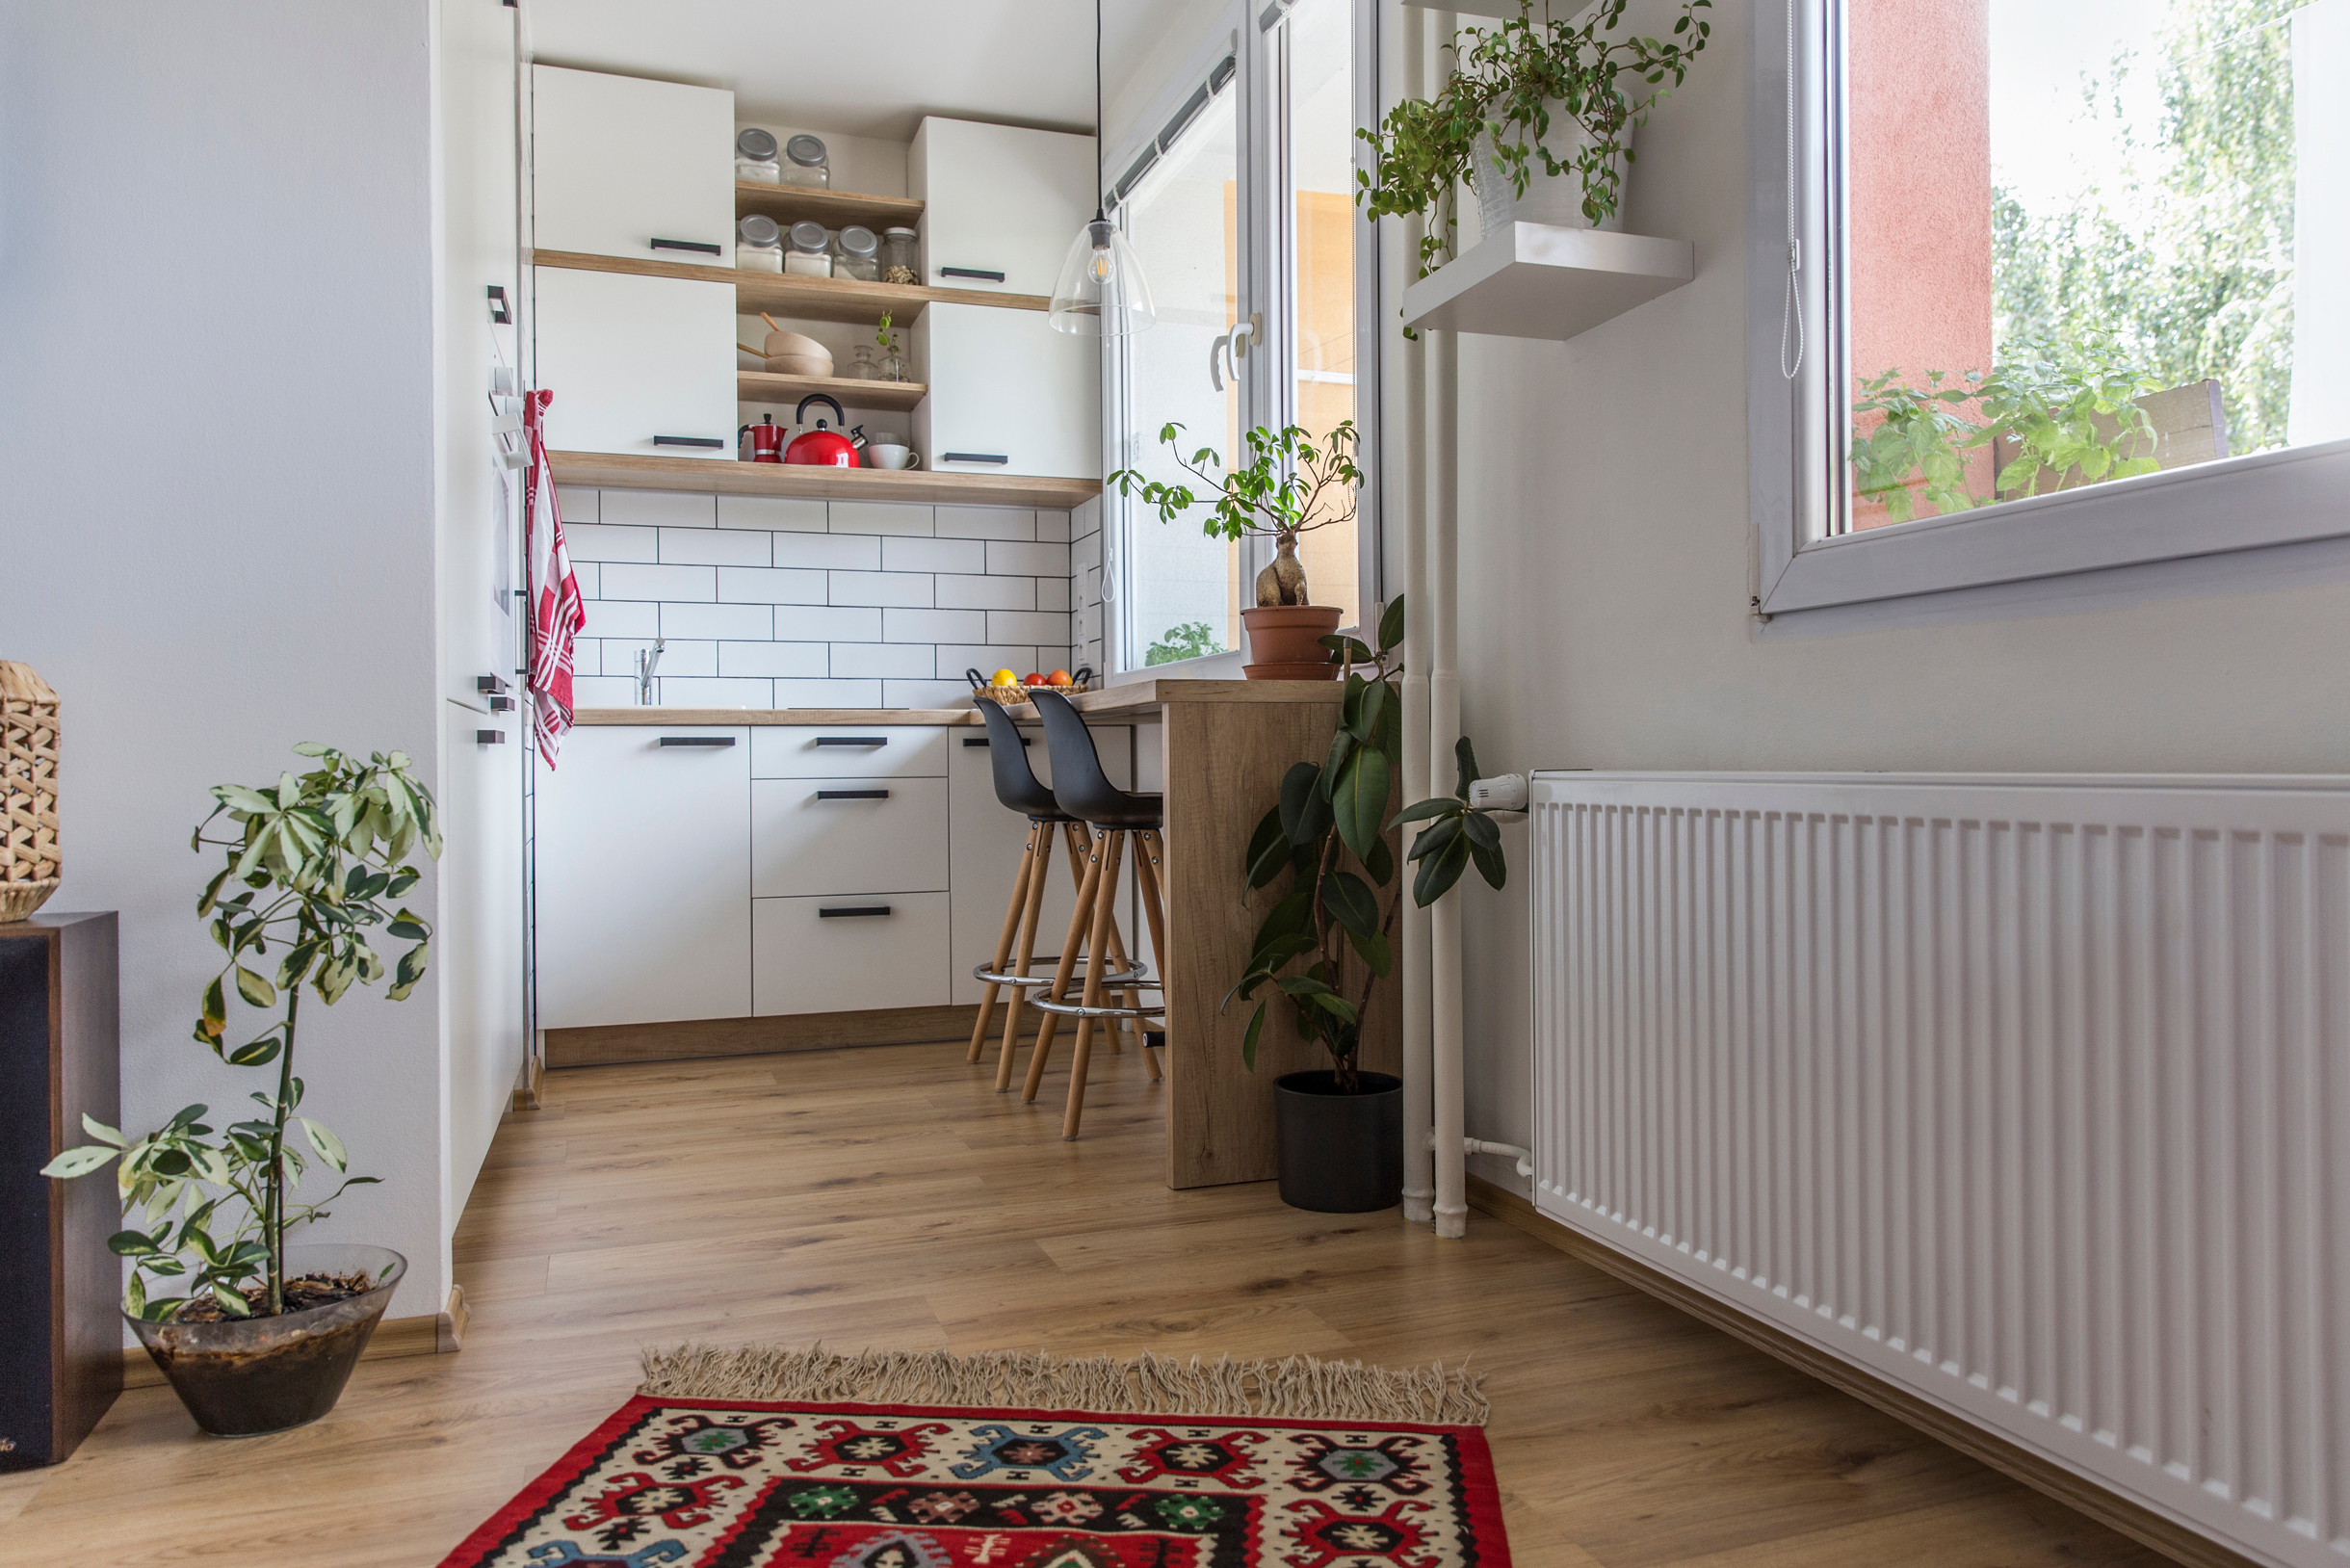 Бохо⁠-⁠кухня тоже хорошо впишется в маленькие пространства. Дополняйте ее яркими деталями и растениями в горшках. Фотография: Michaela Komi / Shutterstock / FOTODOM